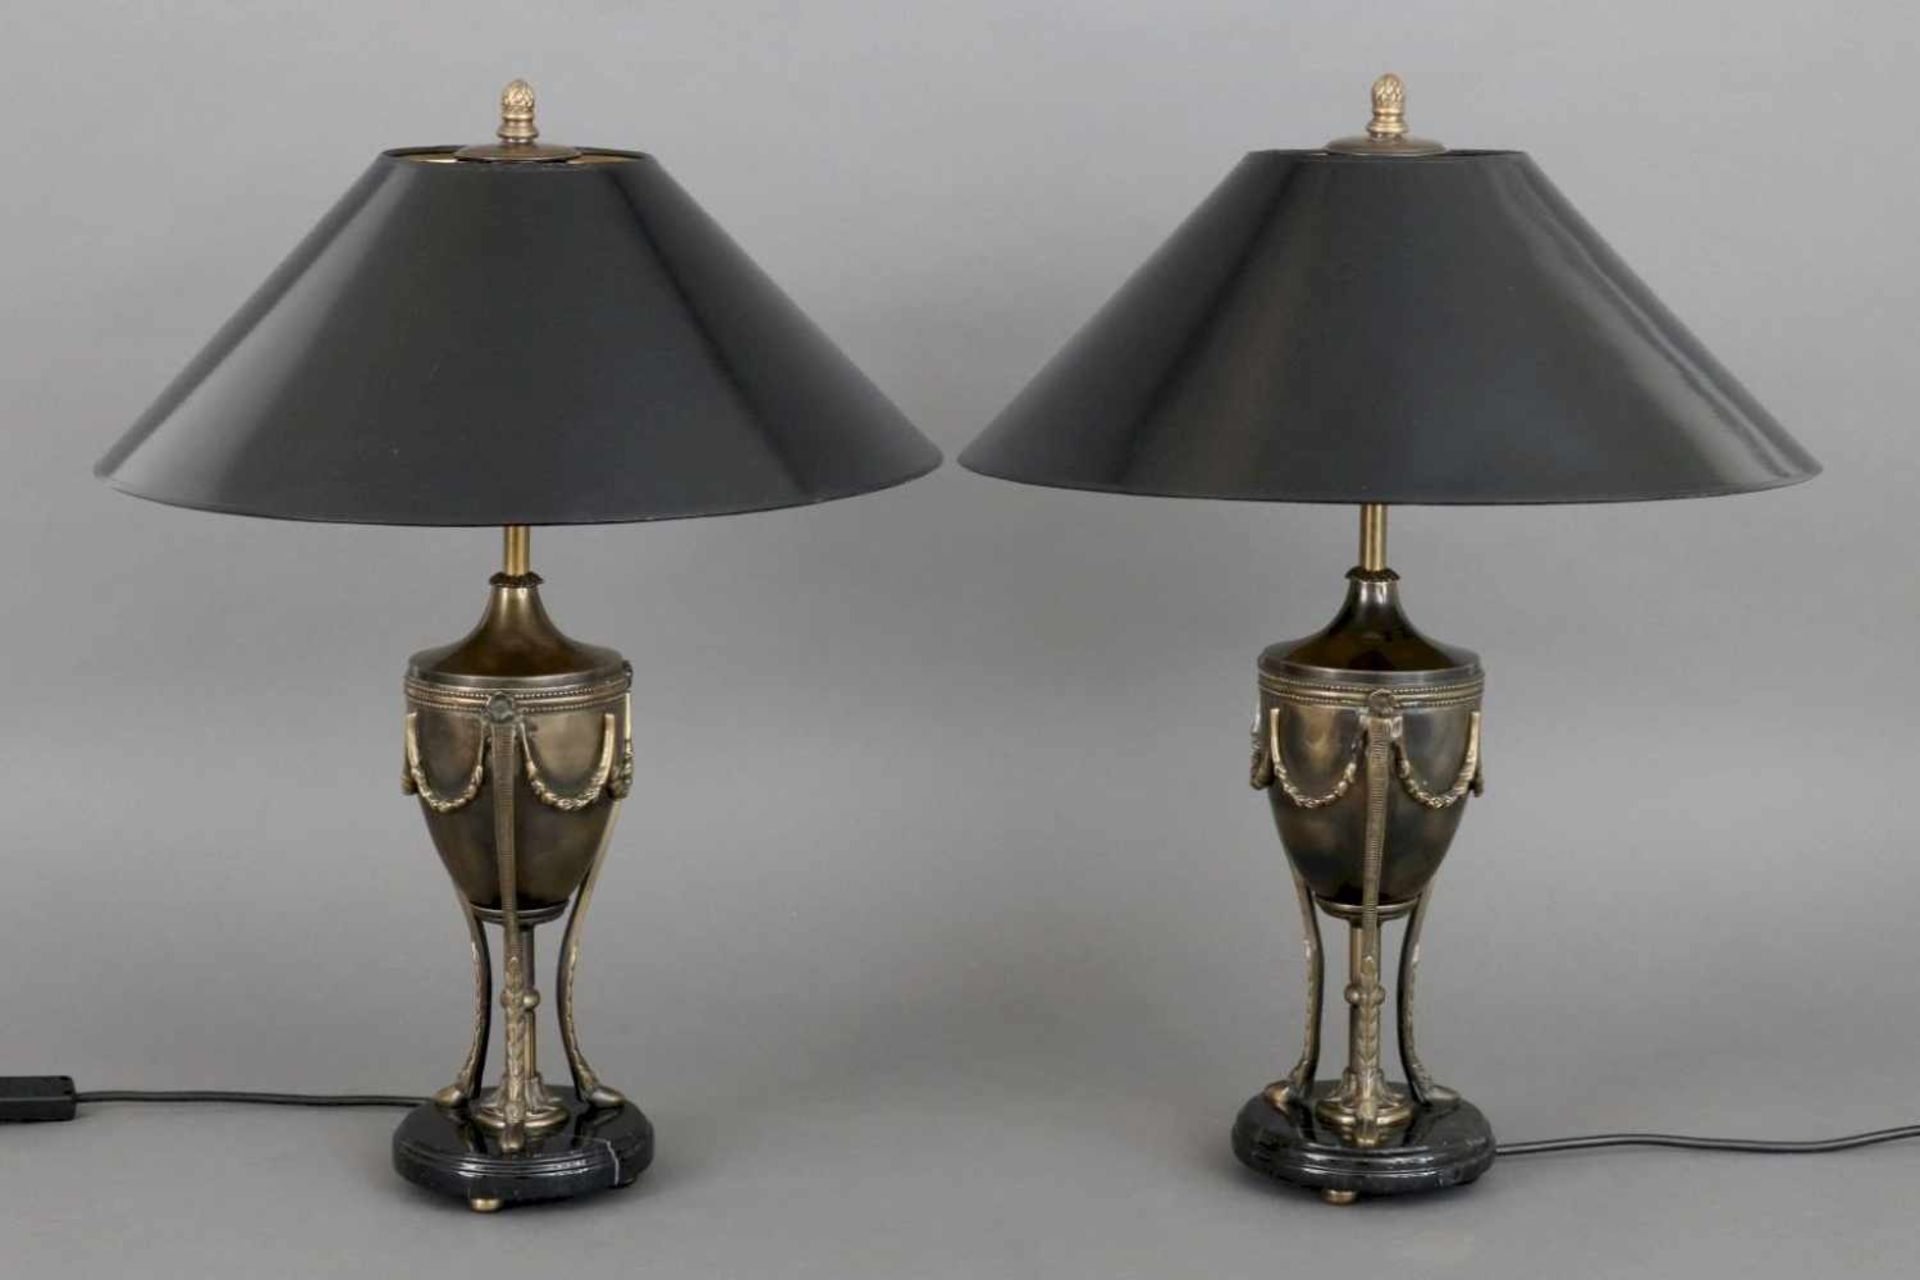 Paar Tischlampen im Stile des EmpireFüße in Form von Messing-Urnengefäßen, ovoid, auf 3 Beinen mit